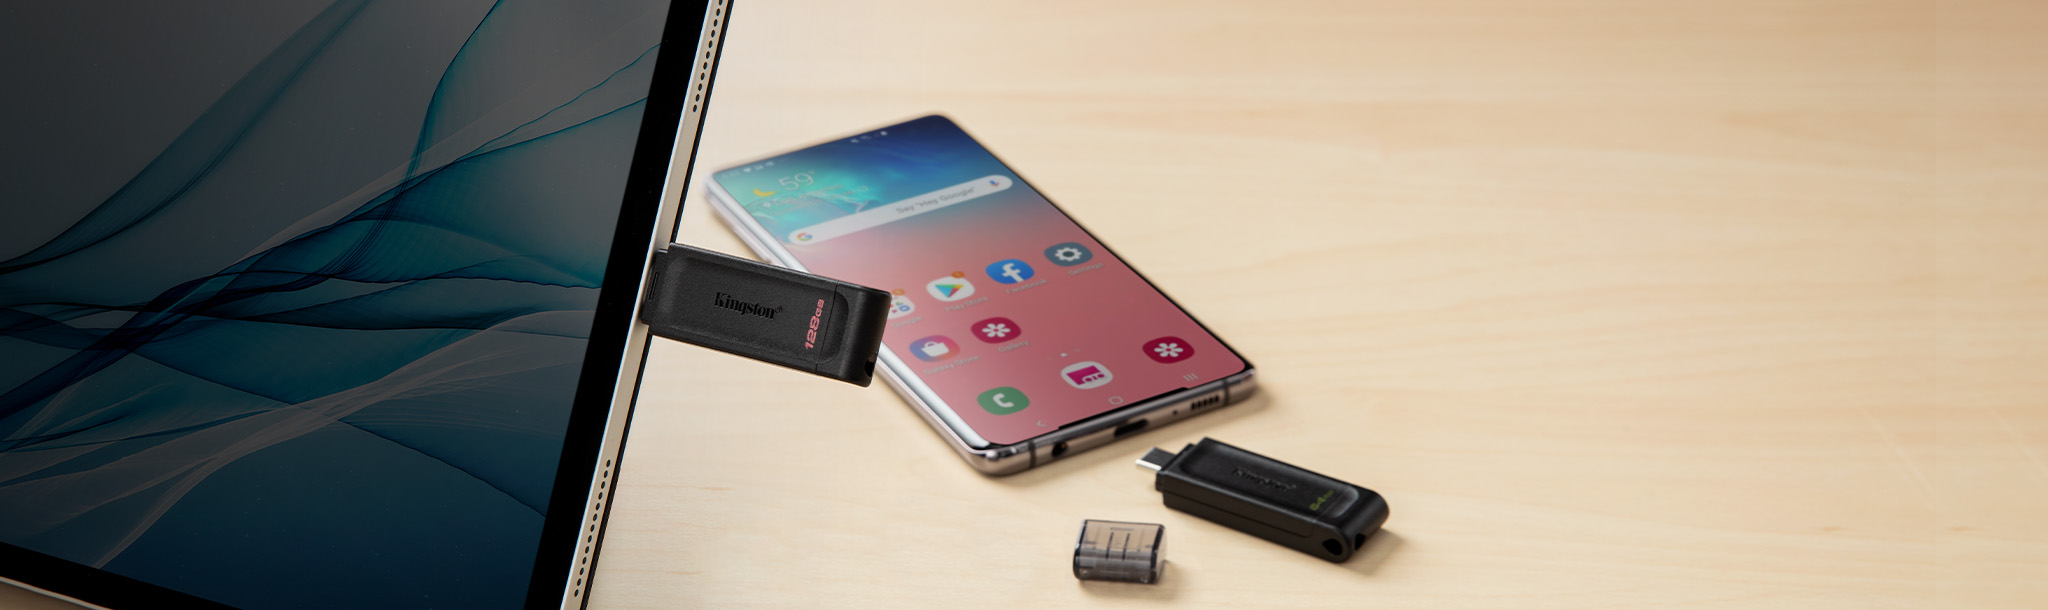 Зображення DT70 із планшетом і телефоном, обладнаними роз’ємом USB-C